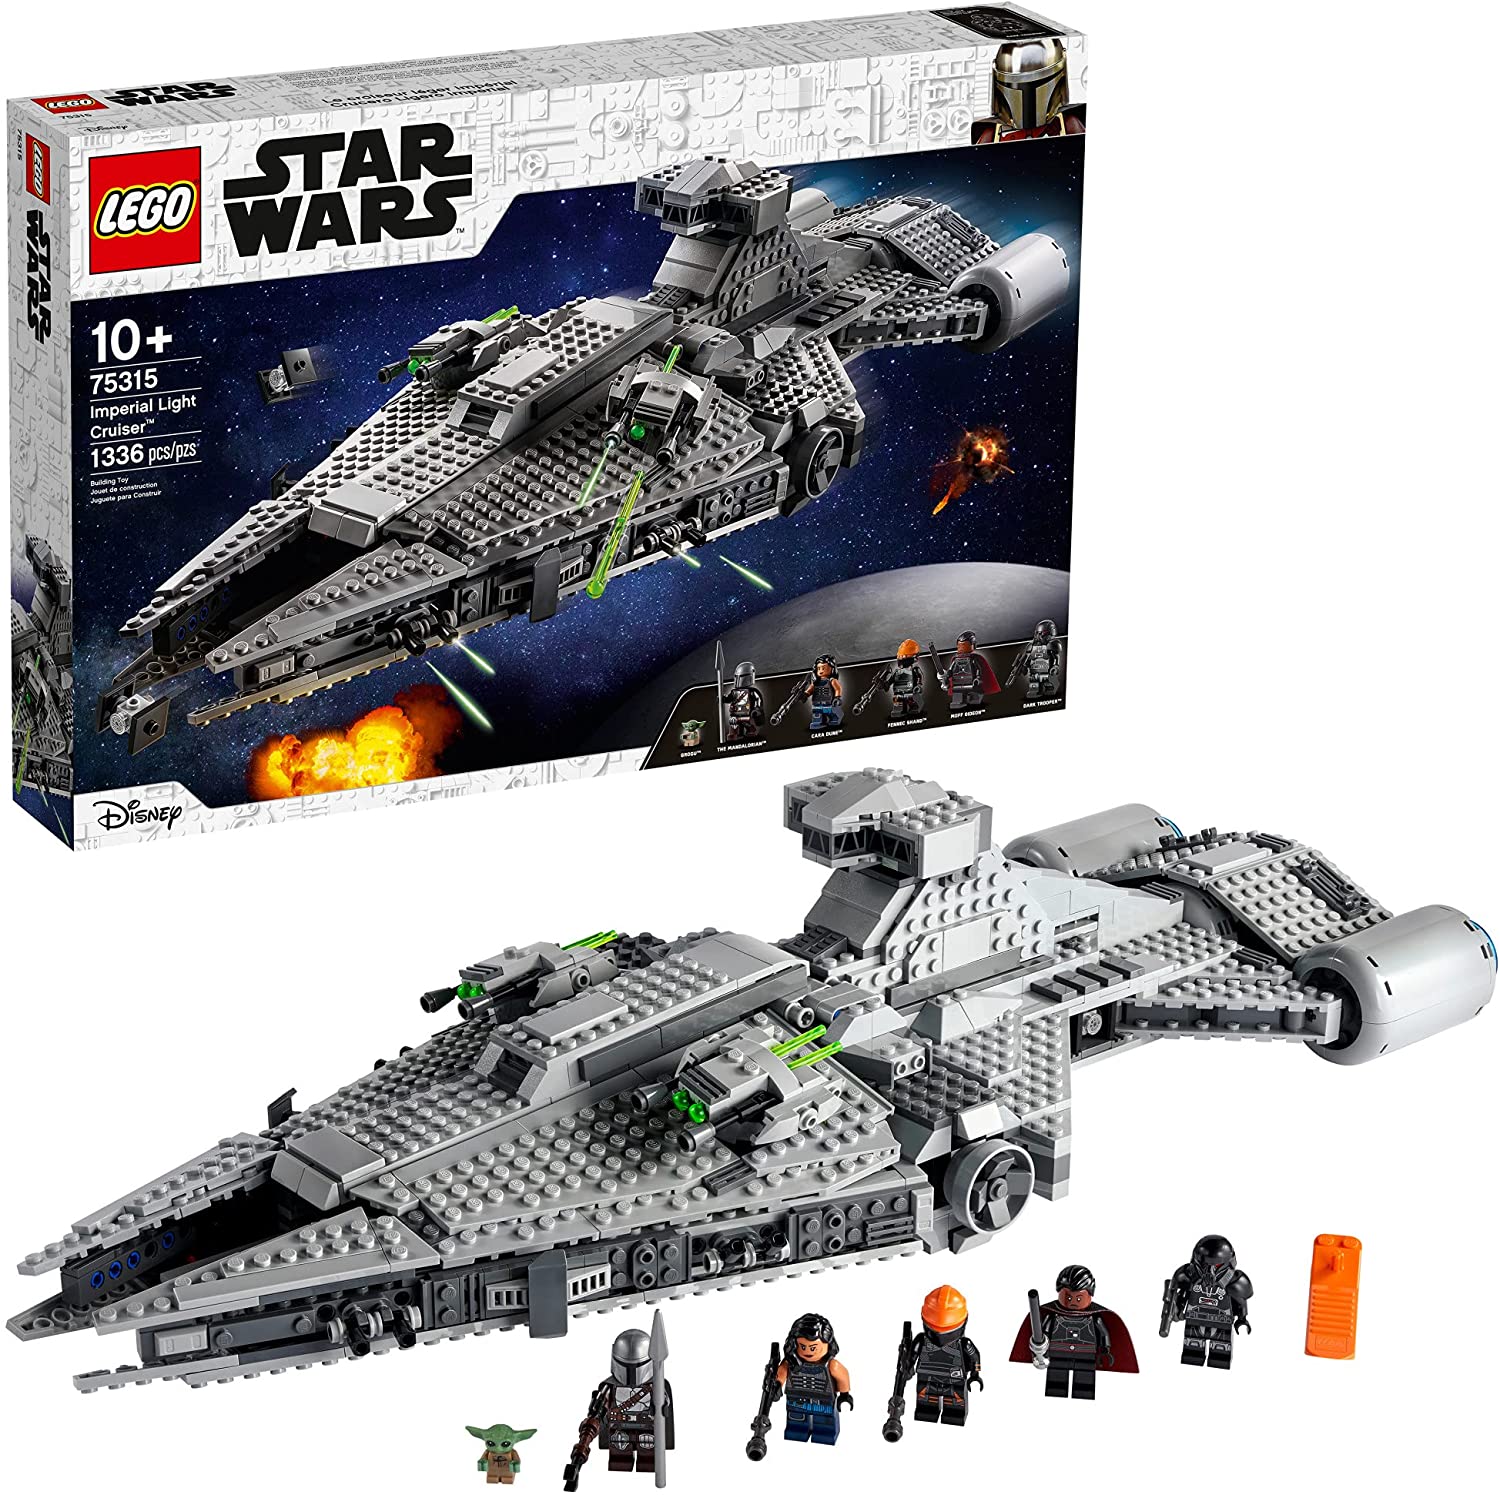 LEGO Star Wars Imperial Light Cruiser 75315 - Kit de construcción para niños, juguete con 5 minifigu